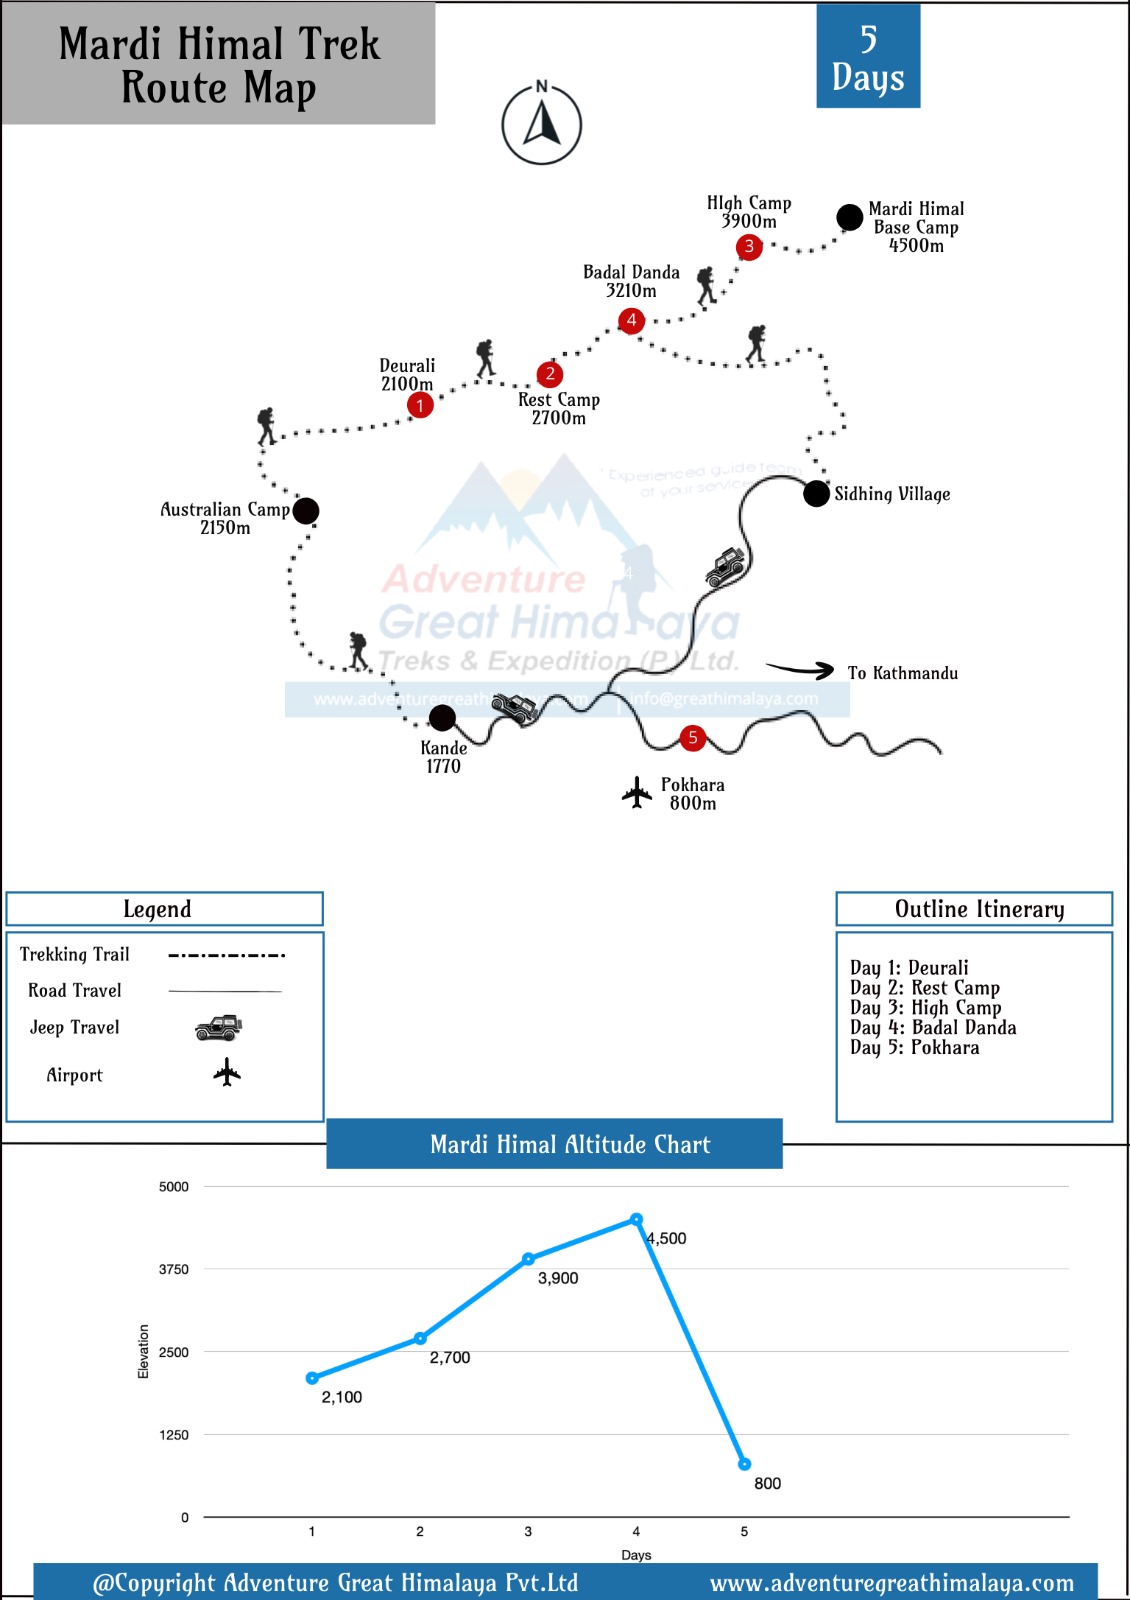 Mardi Himal Trek Map